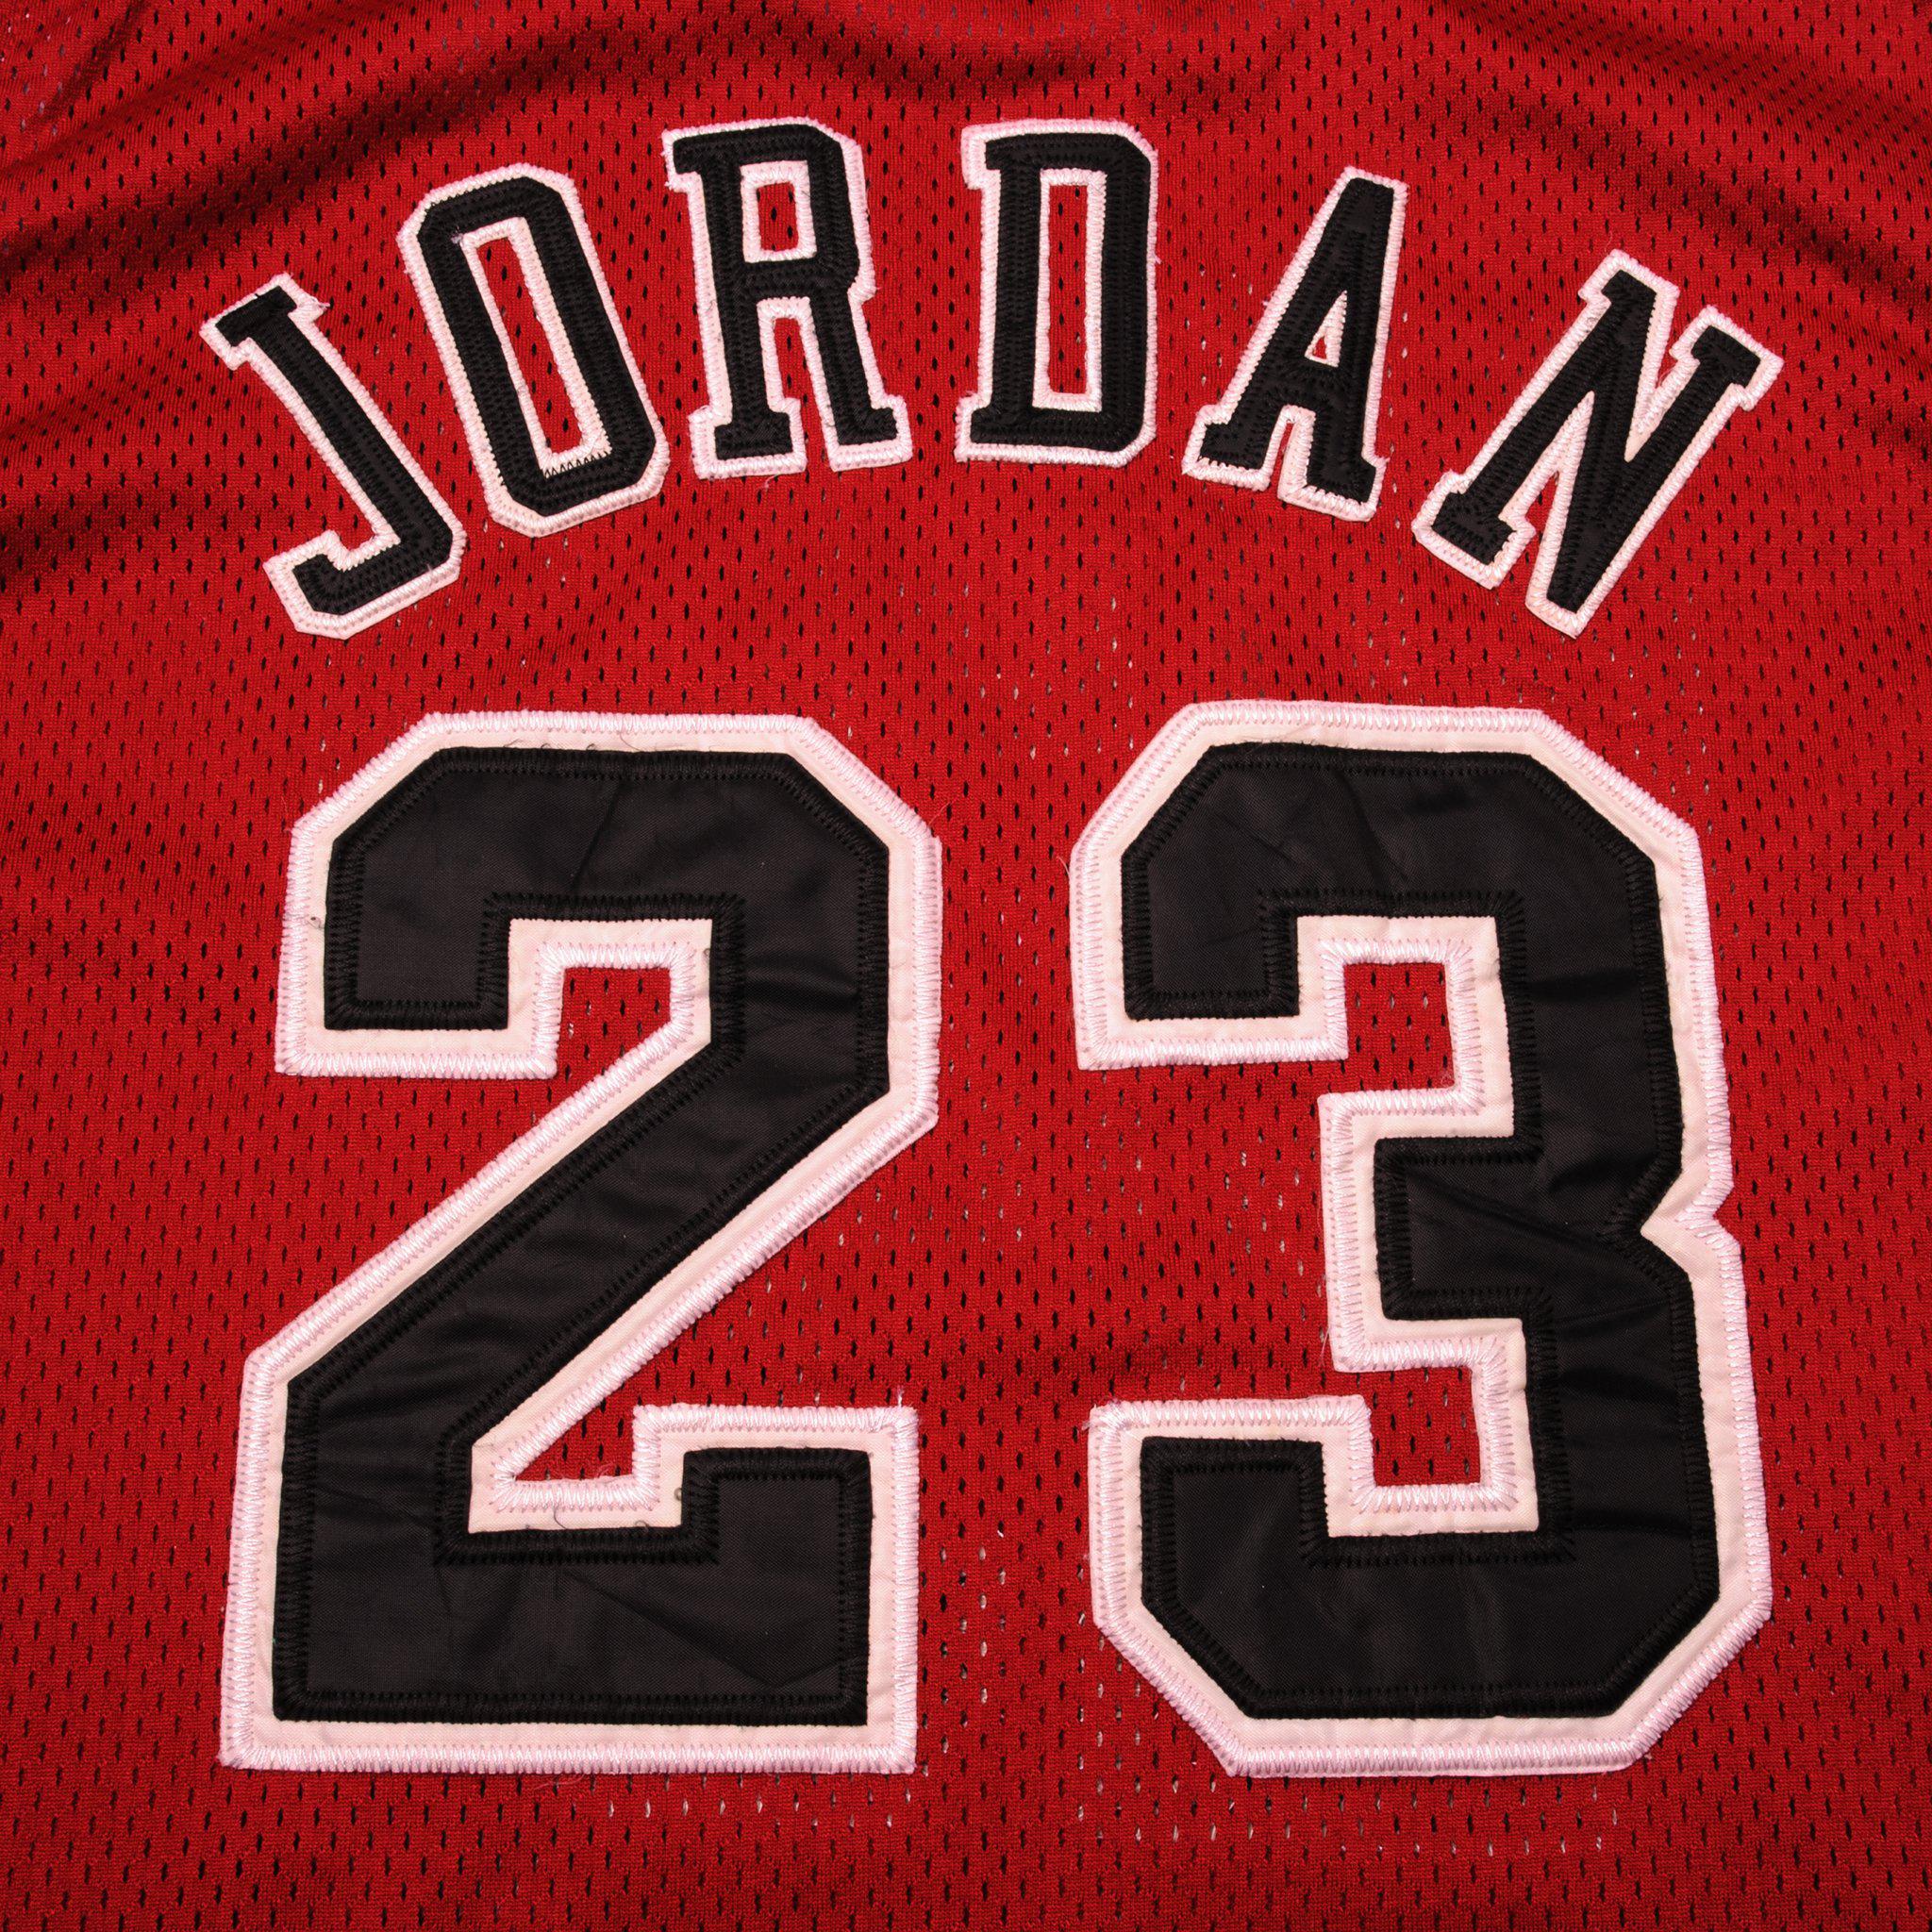 Bulls - Jordan 23 Retired Number Bull Silhouette (Red)